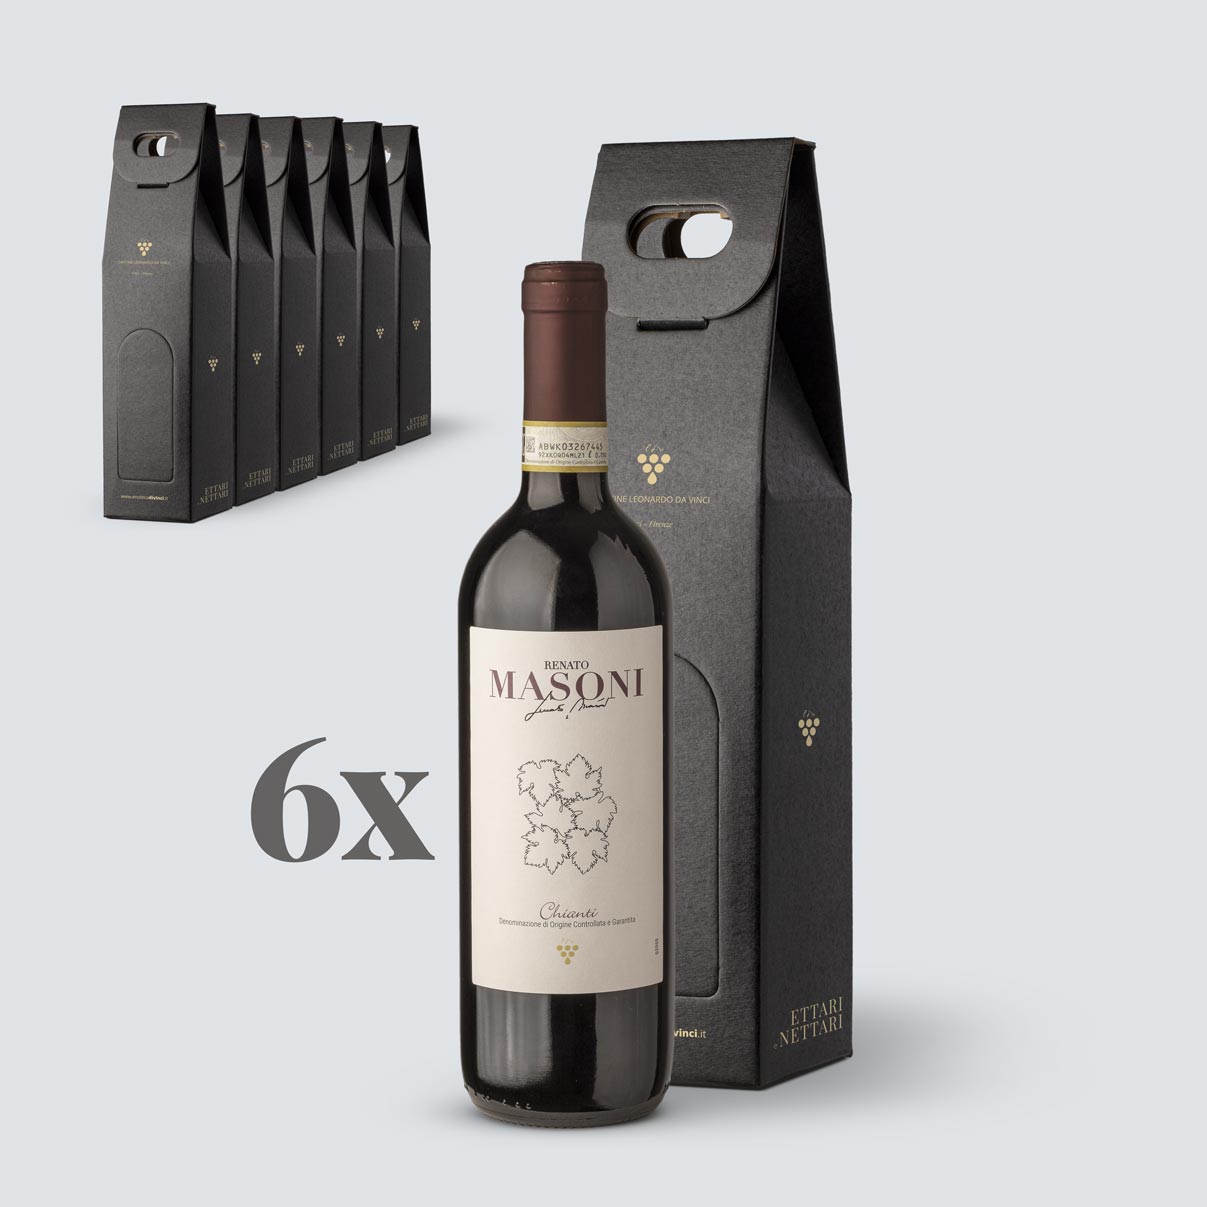 6x Chianti DOCG 2019 Confezione Regalo - Masoni (€ 8,90 a regalo)